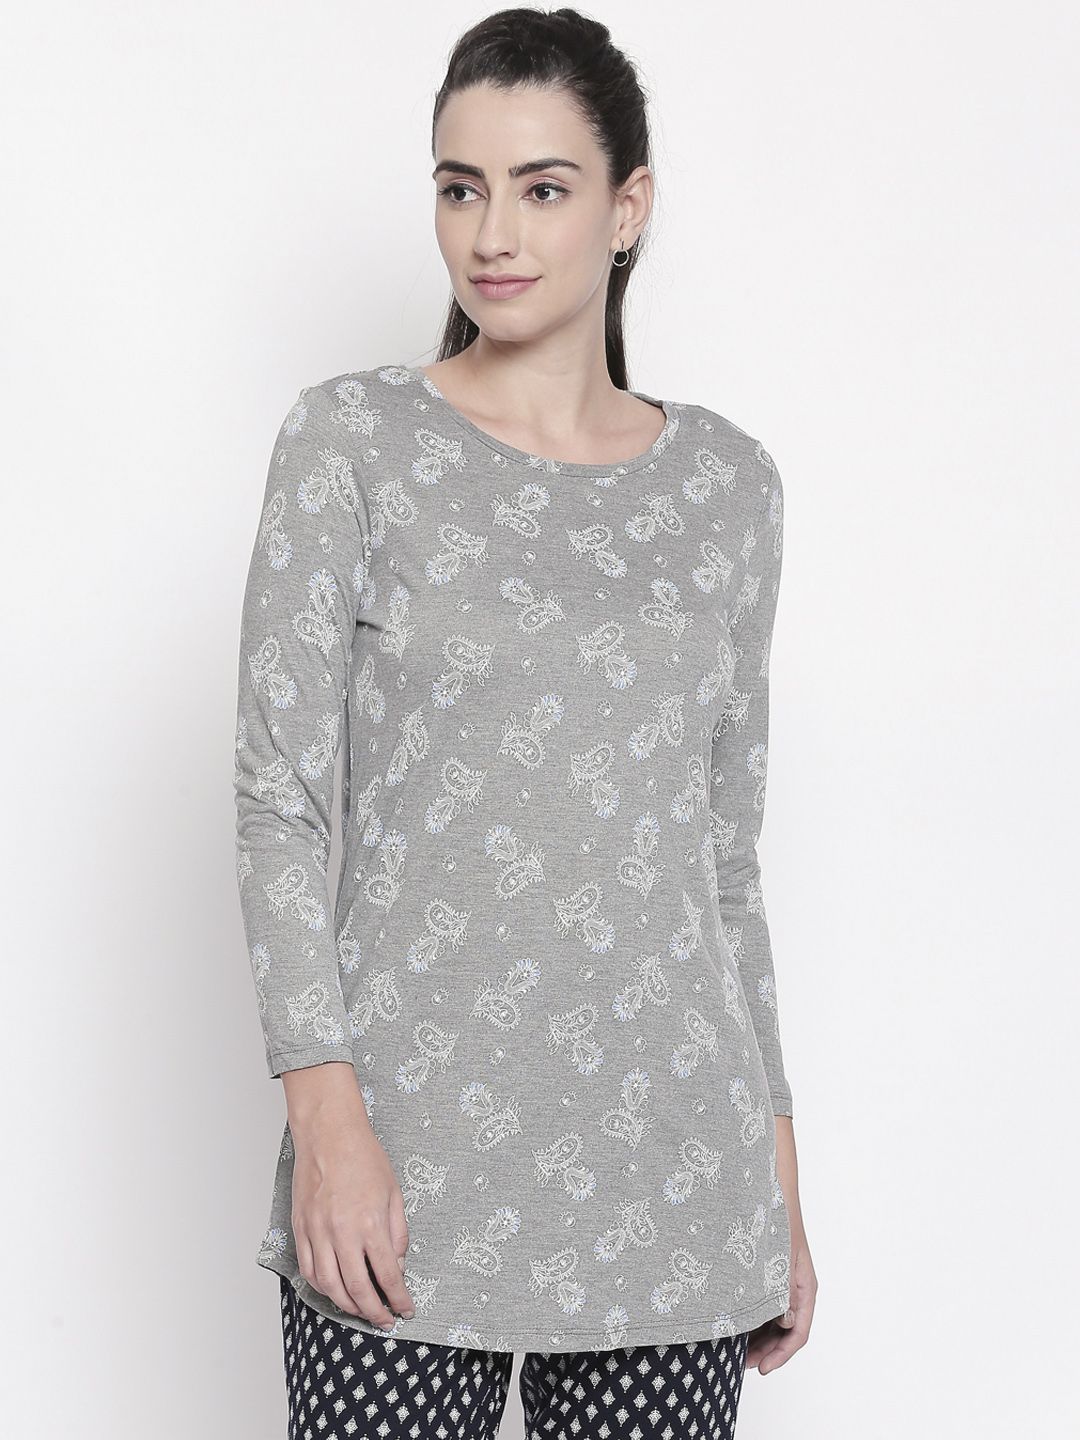 Dreamz by Pantaloons Women Grey Melange & White Printed Lounge T-shirt Price in India